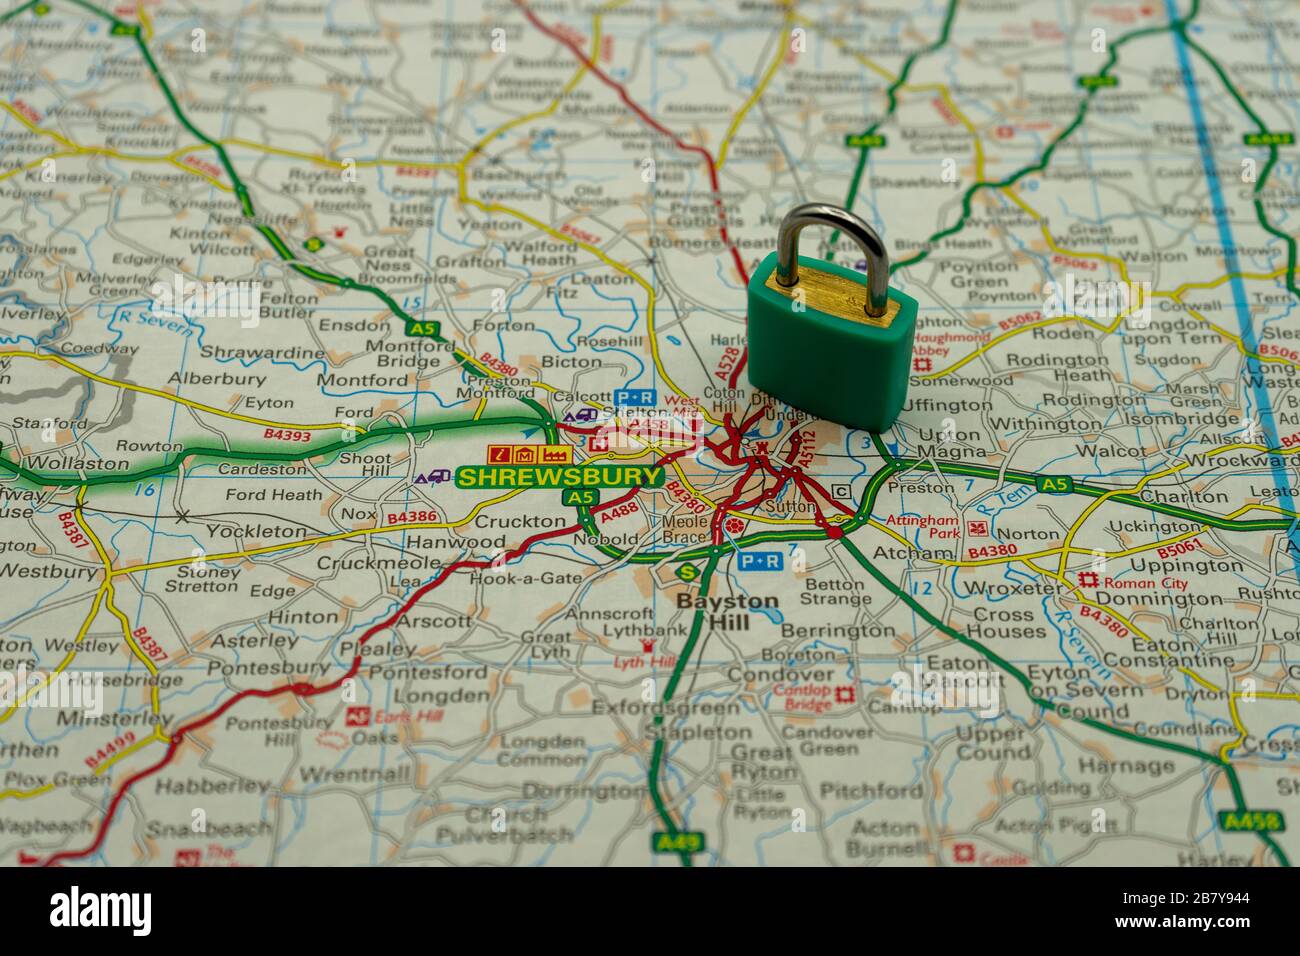 Shrewsbury montré sur une carte routière ou géographique avec un cadenas sur le dessus pour représenter une ville en lock-down Banque D'Images